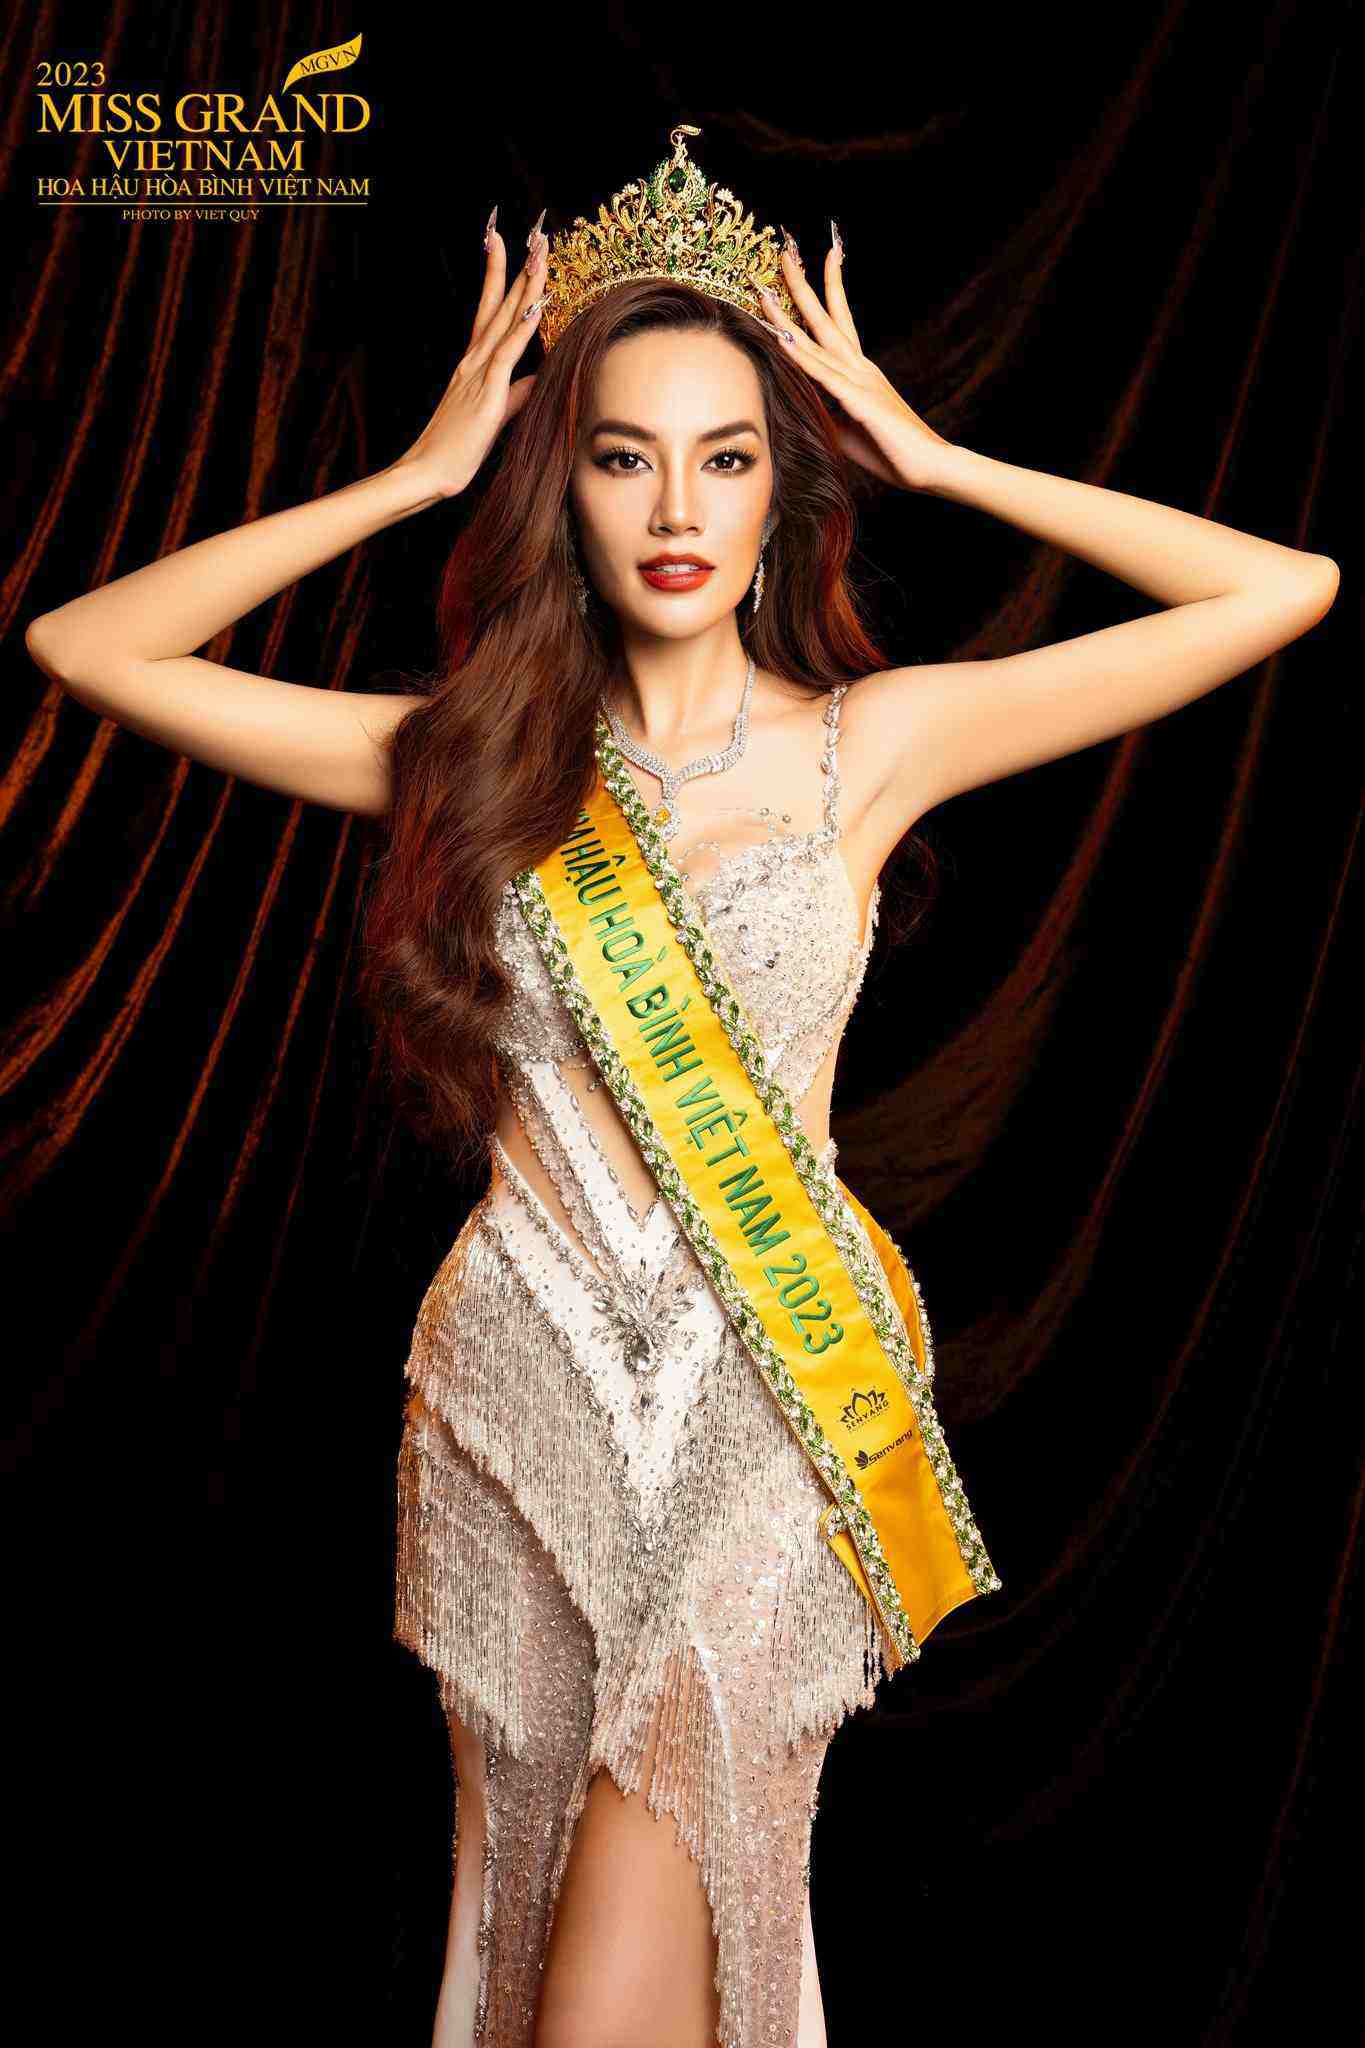 Á hậu Miss Grand thời diễn lót trong MV Hà Hồ: Gương mặt khó nhận ra, lên hình 10 giây - 1